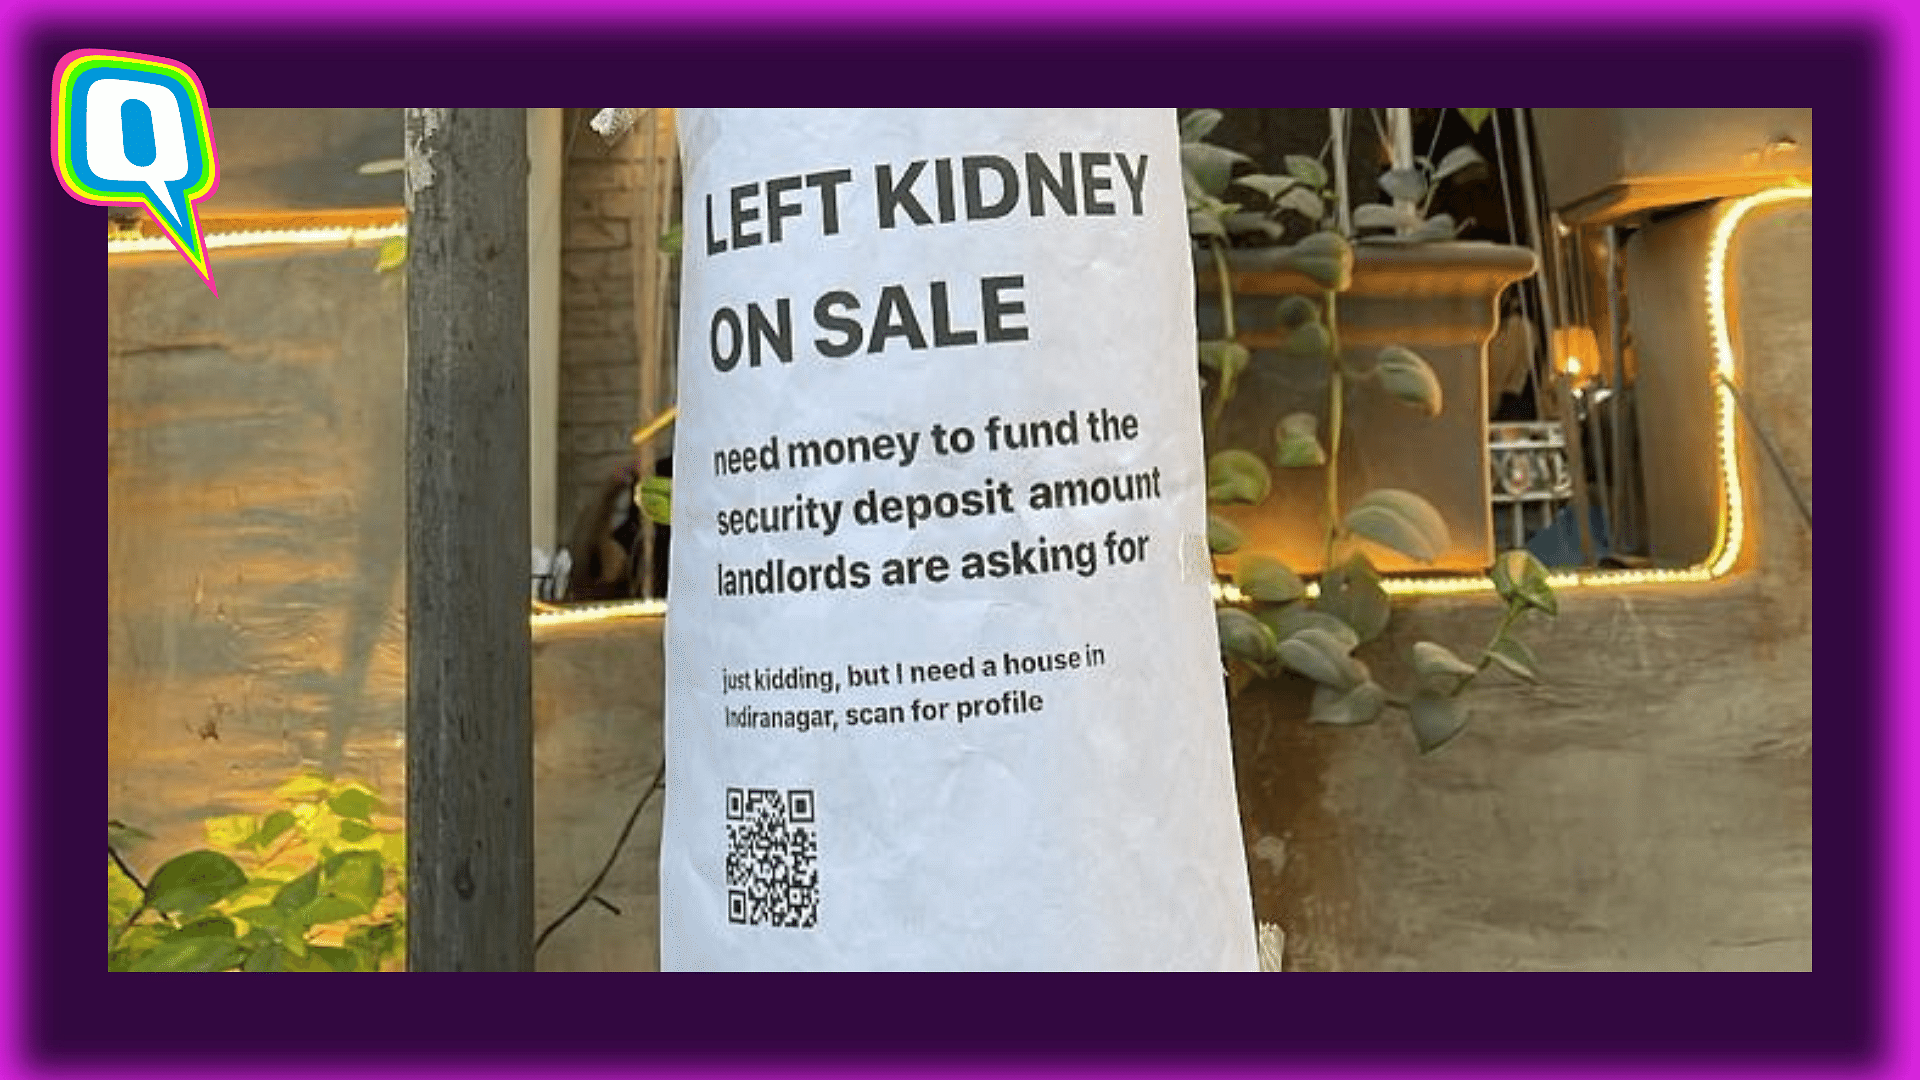 <div class="paragraphs"><p>Left Kidney On Sale: Bangalorean Attempts To Raise Funds For Security Deposit</p></div>